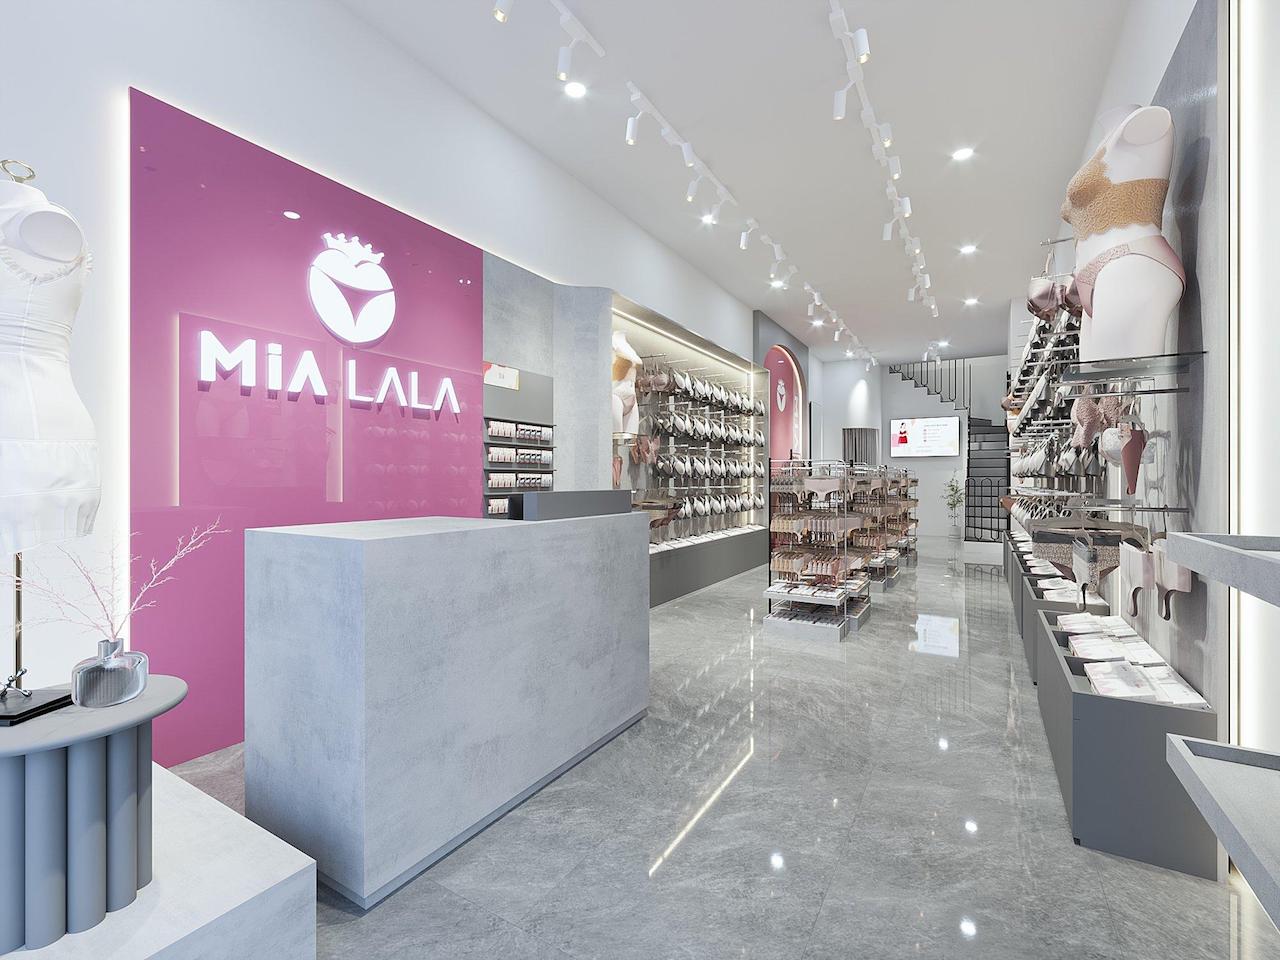 Thiết kế nội thất shop MIALALA sang trọng, kích thích nhu cầu mua sắm của khách hàng